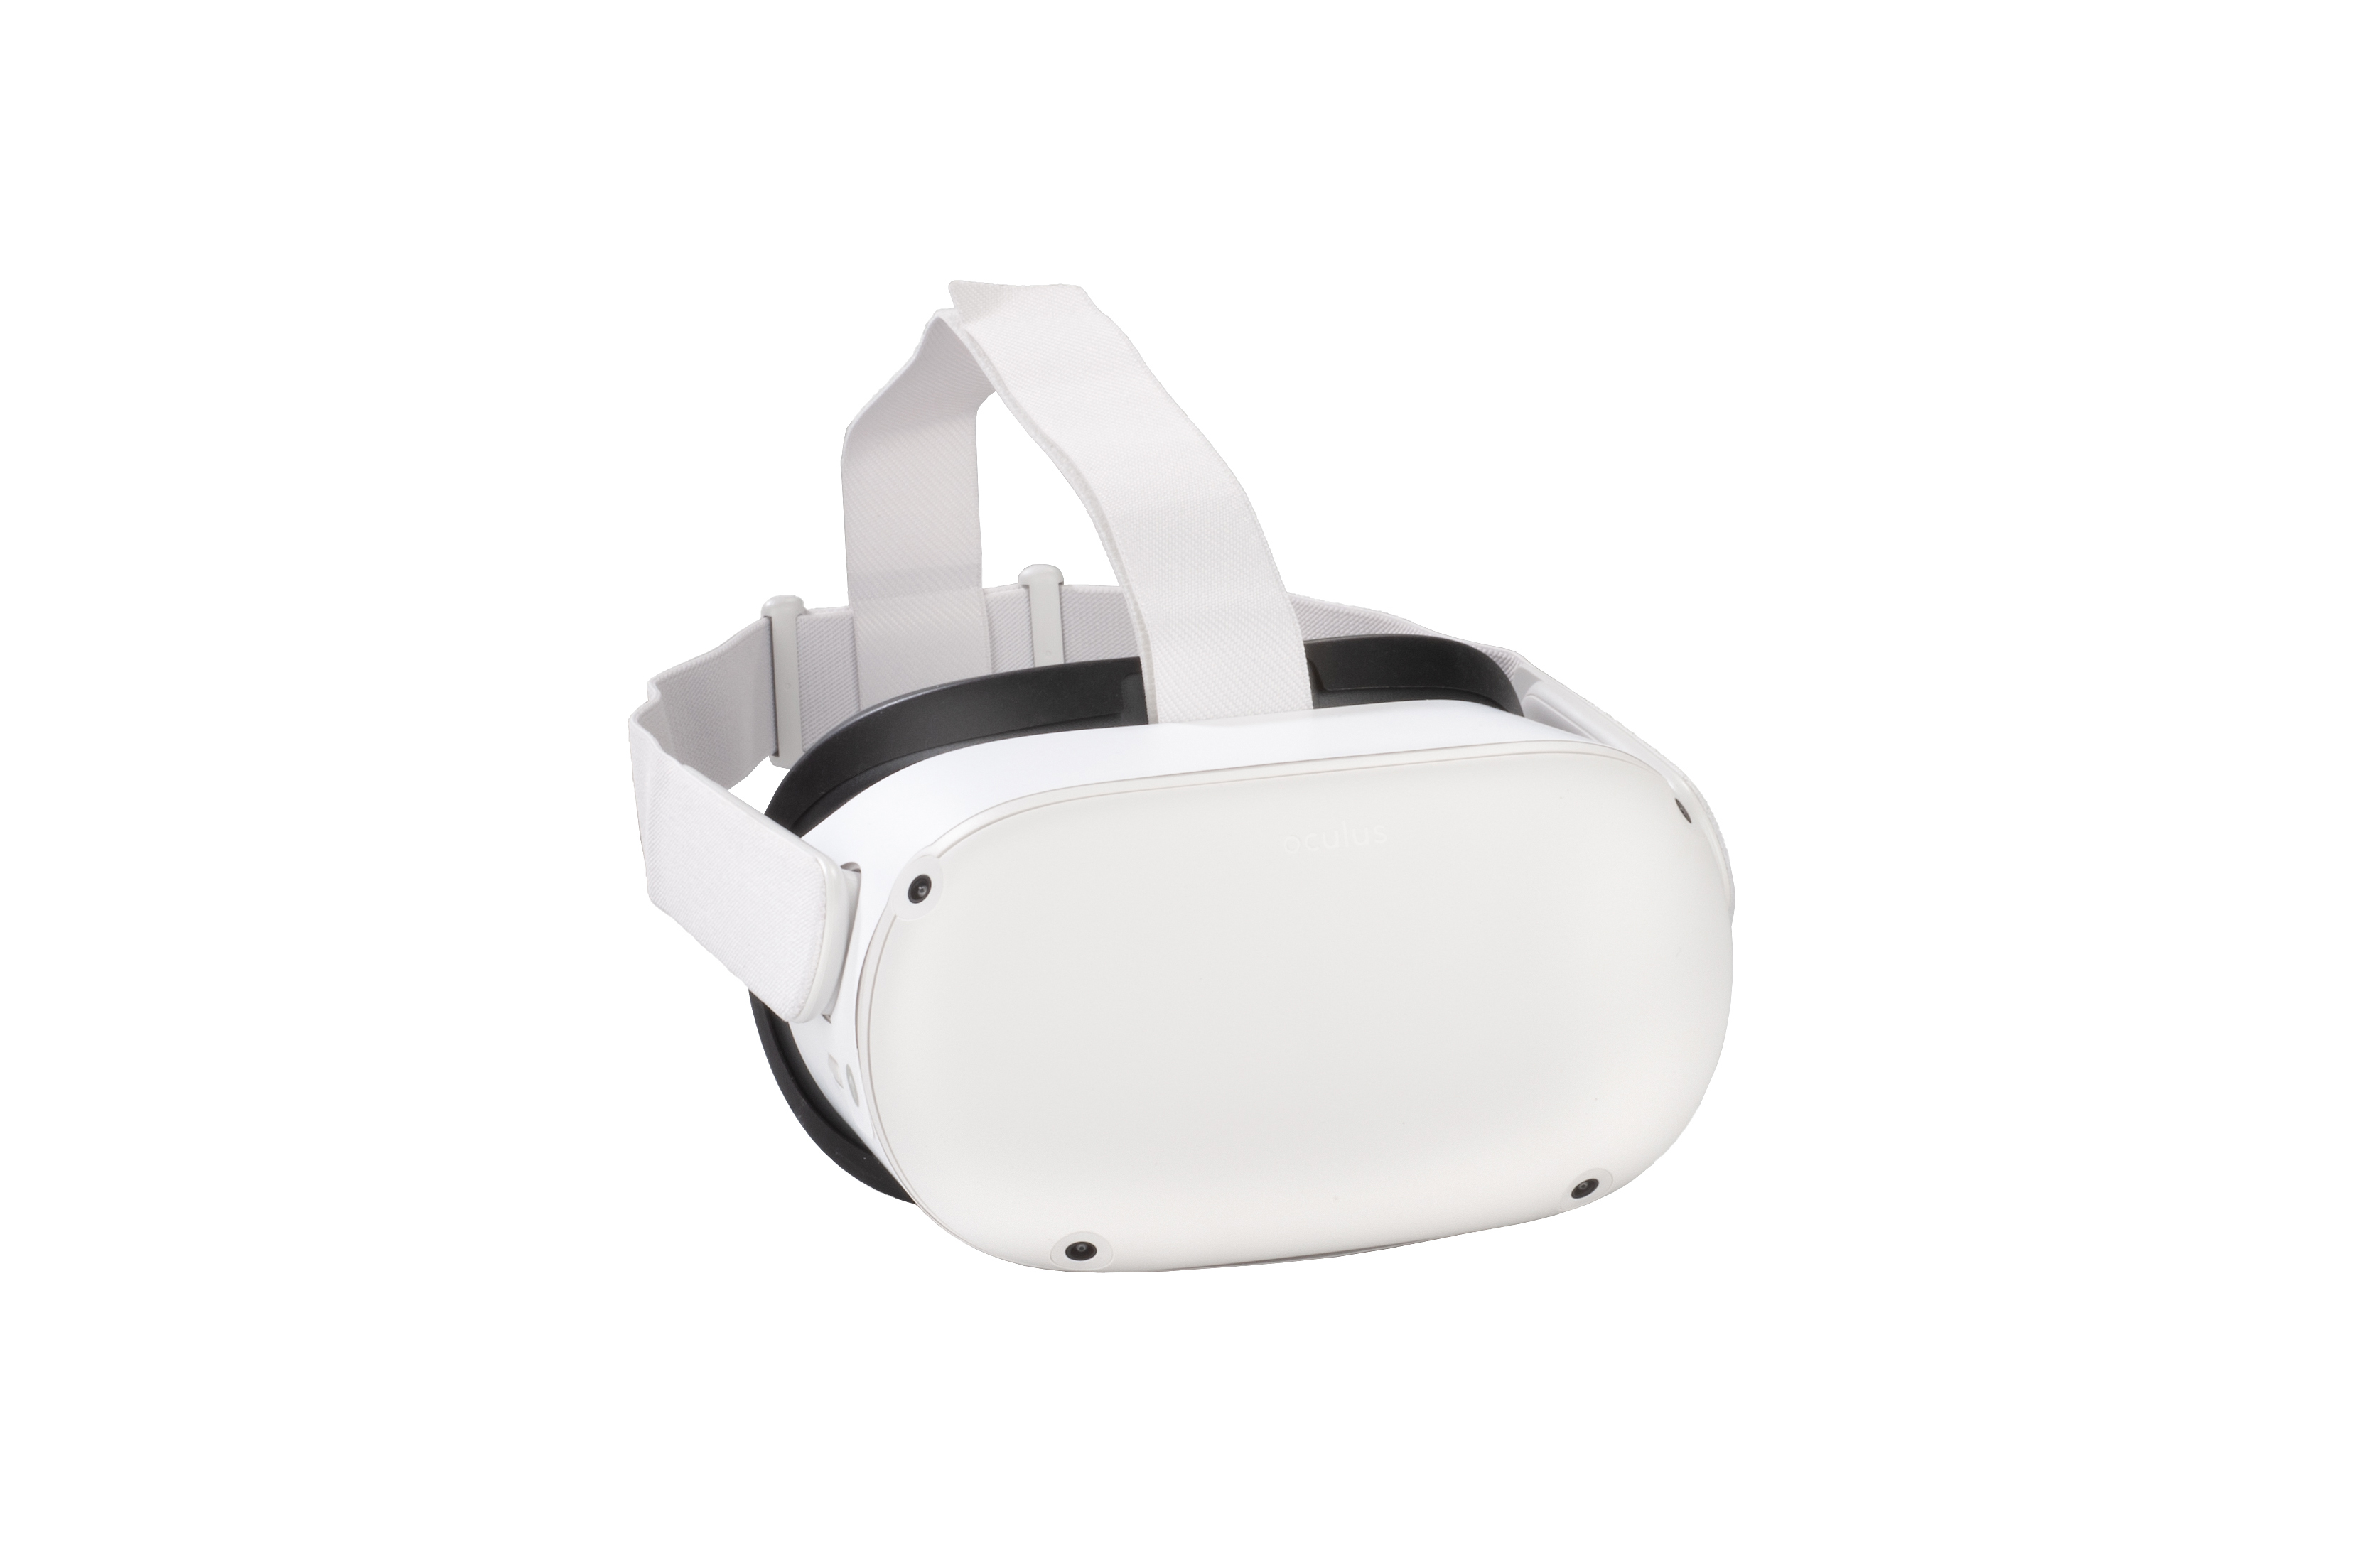 DISPOSITIVOS VR  ¿Qué gafas de Realidad Virtual comprar?